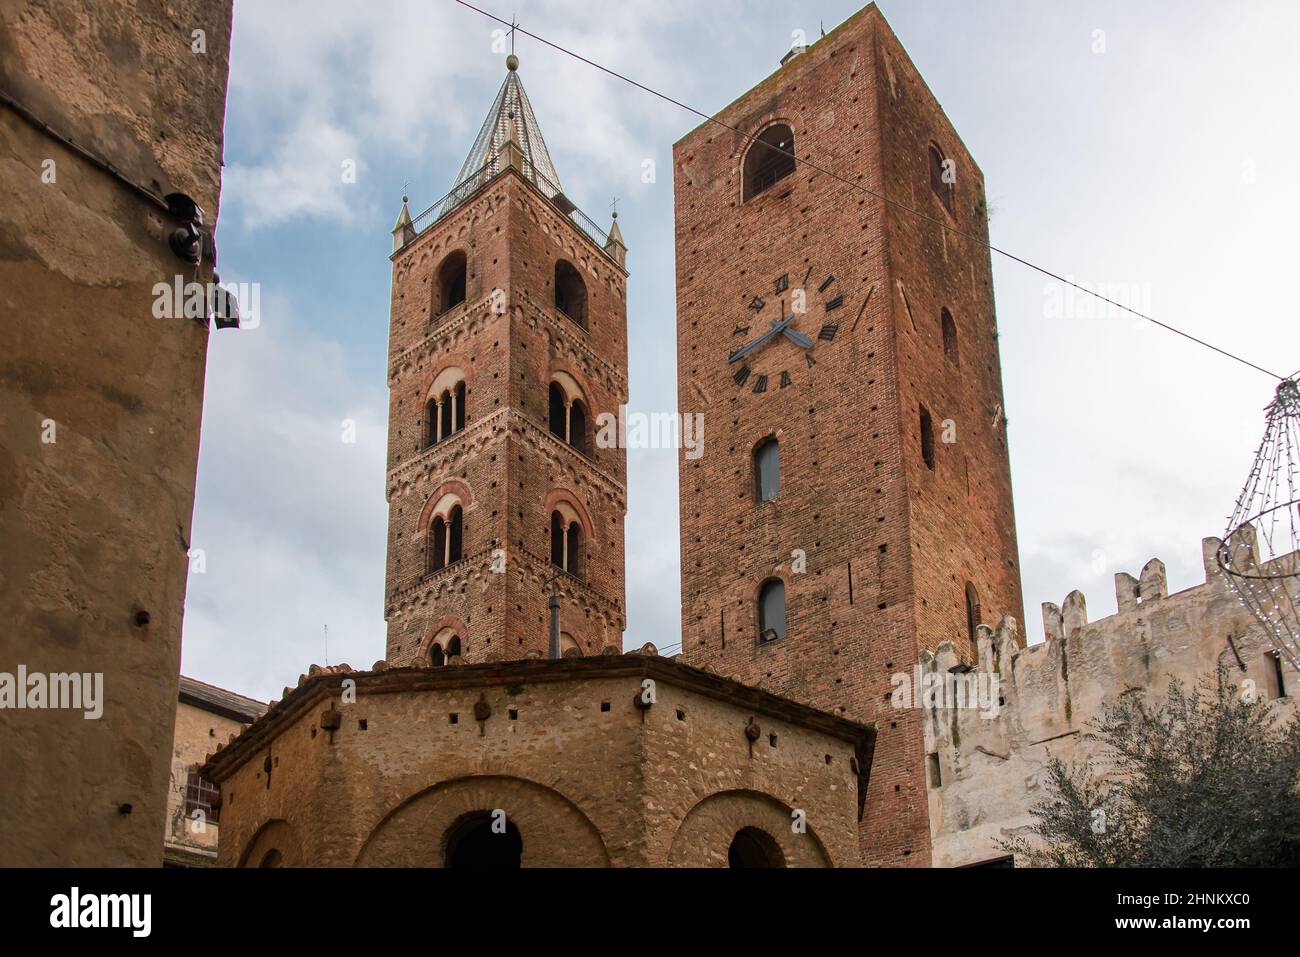 Il campanile della cattedrale e la Torre dell Orologio, monumenti medievali del centro storico del villaggio ligure di Albenga Foto Stock